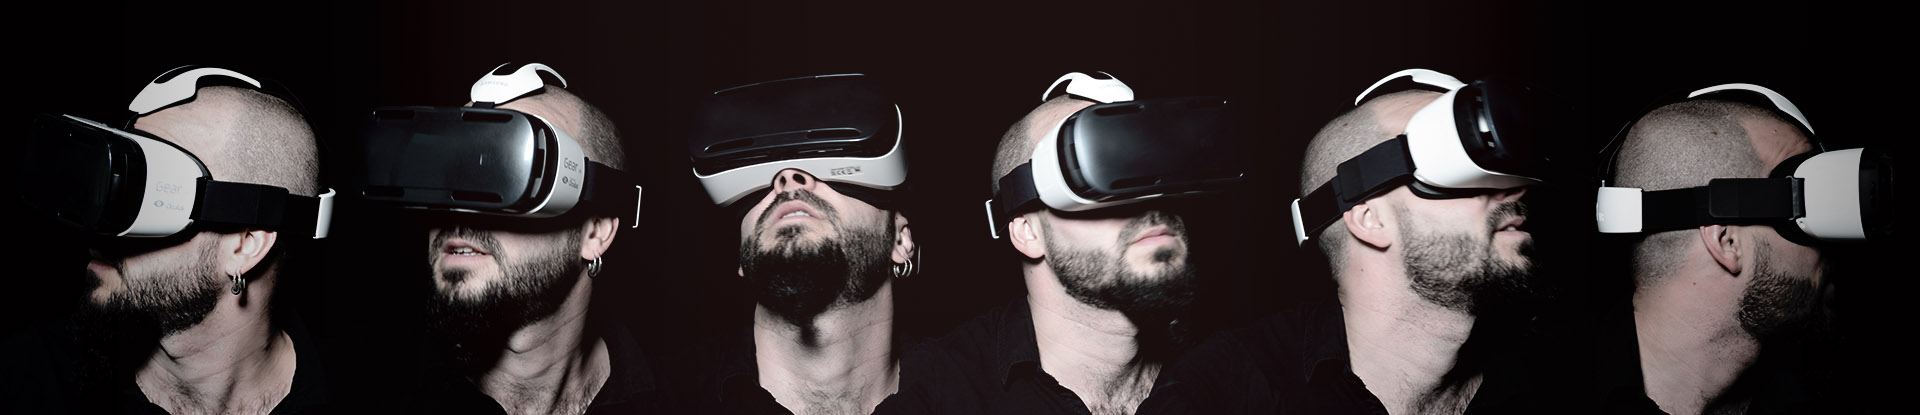 frise réalité virtuelle